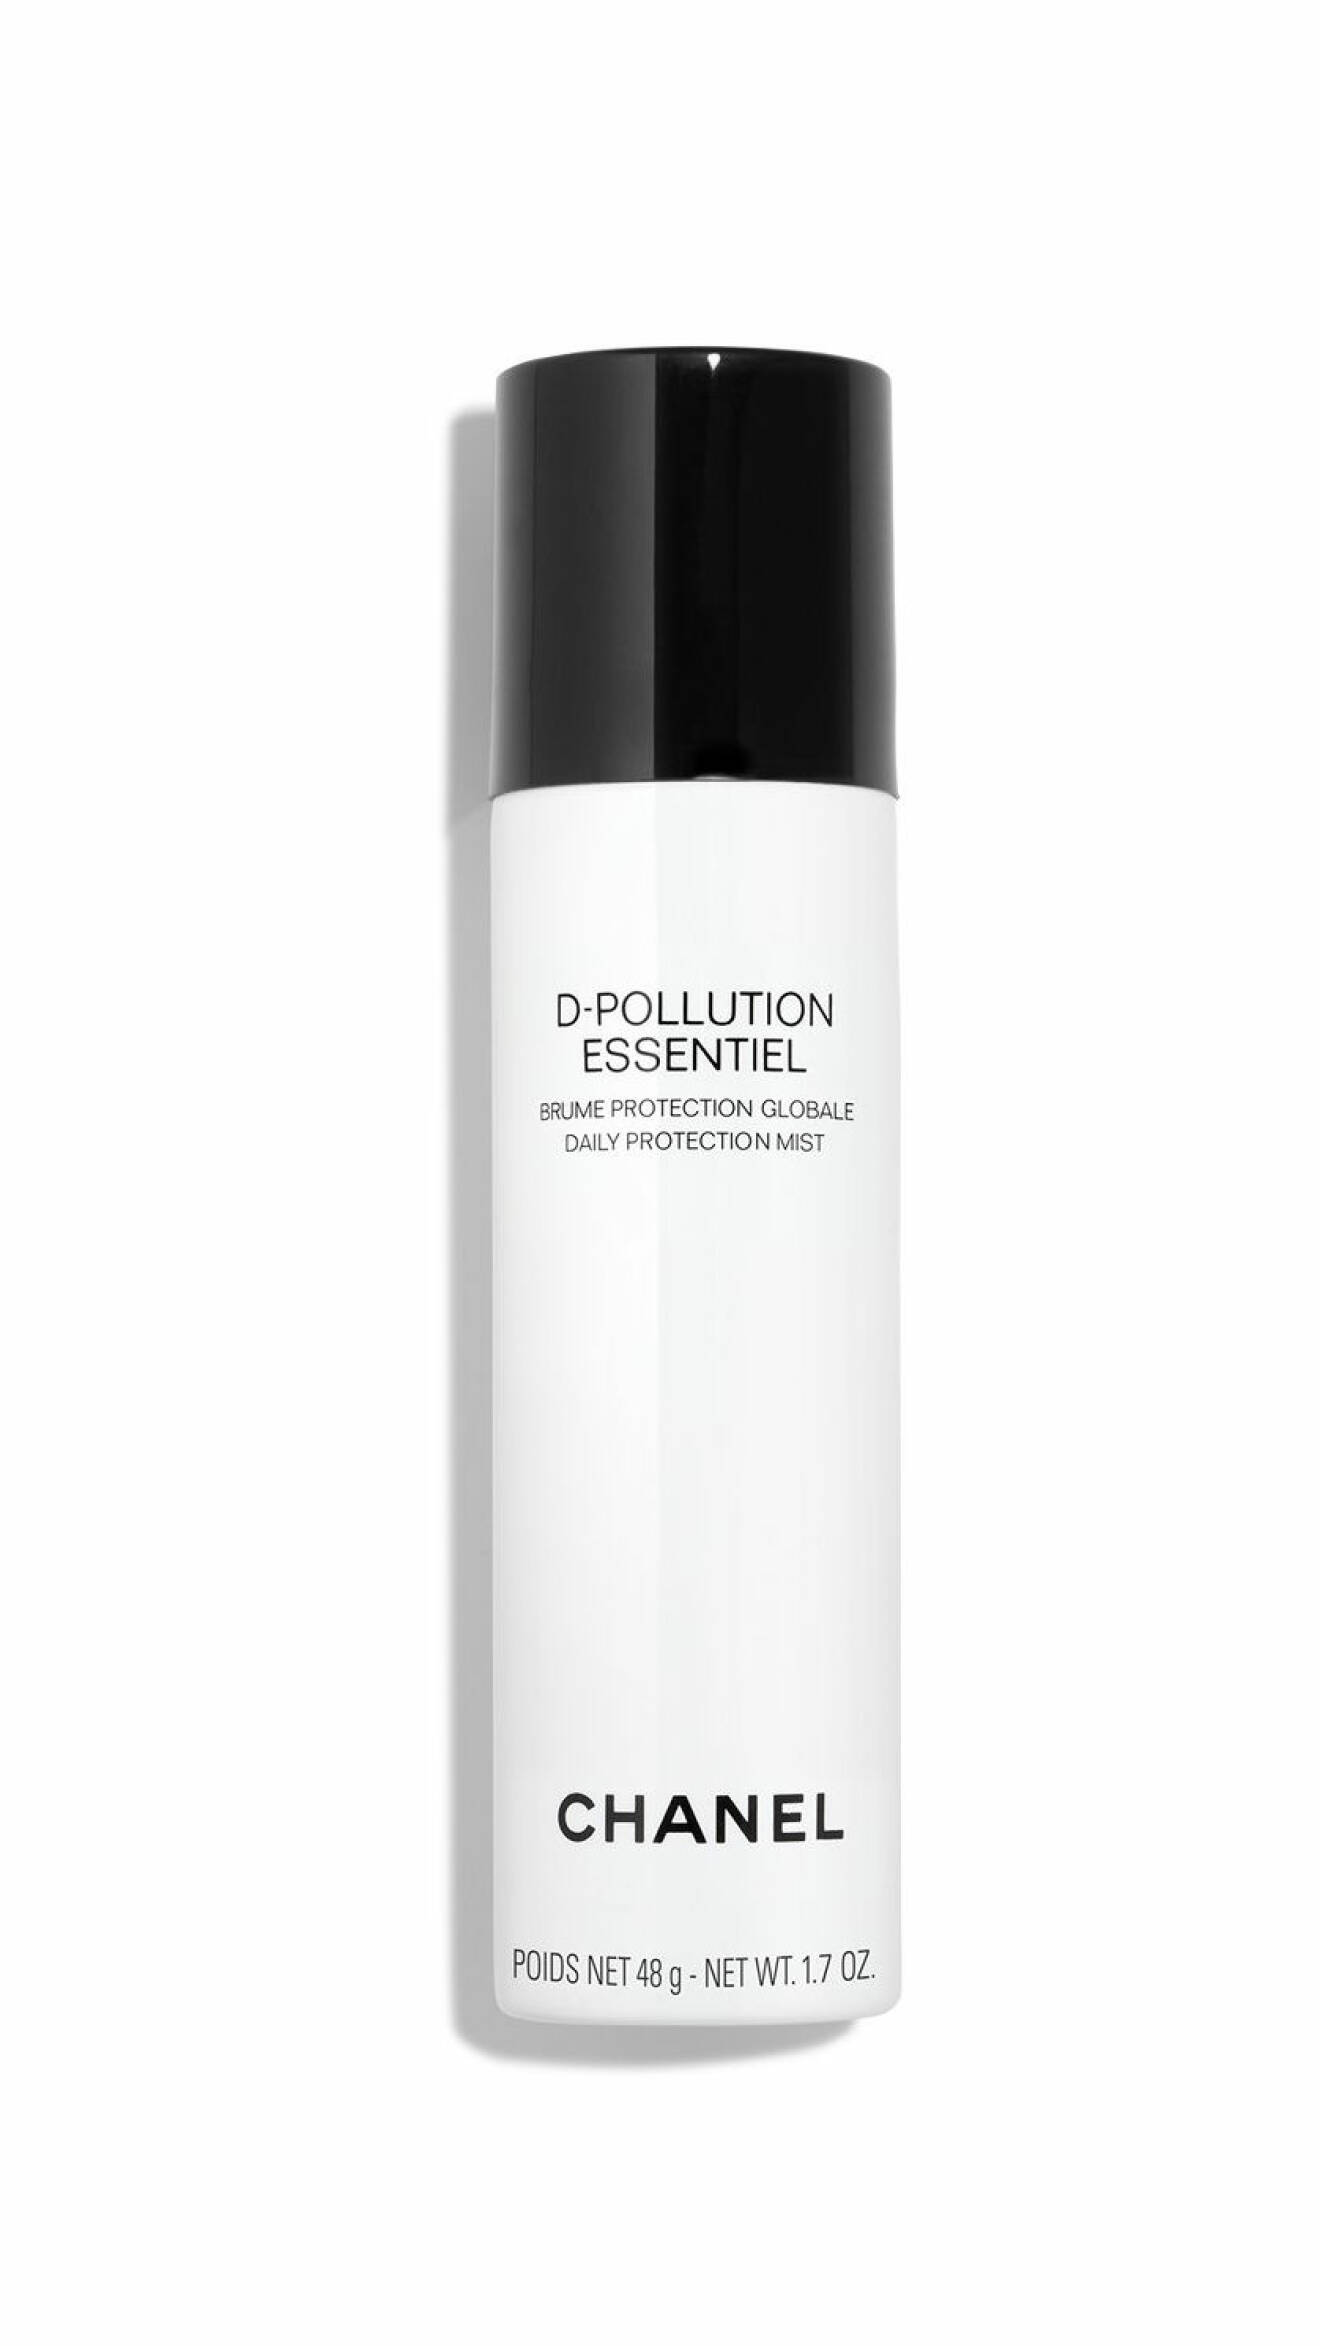 D-pollution essentiel, från Chanel. 